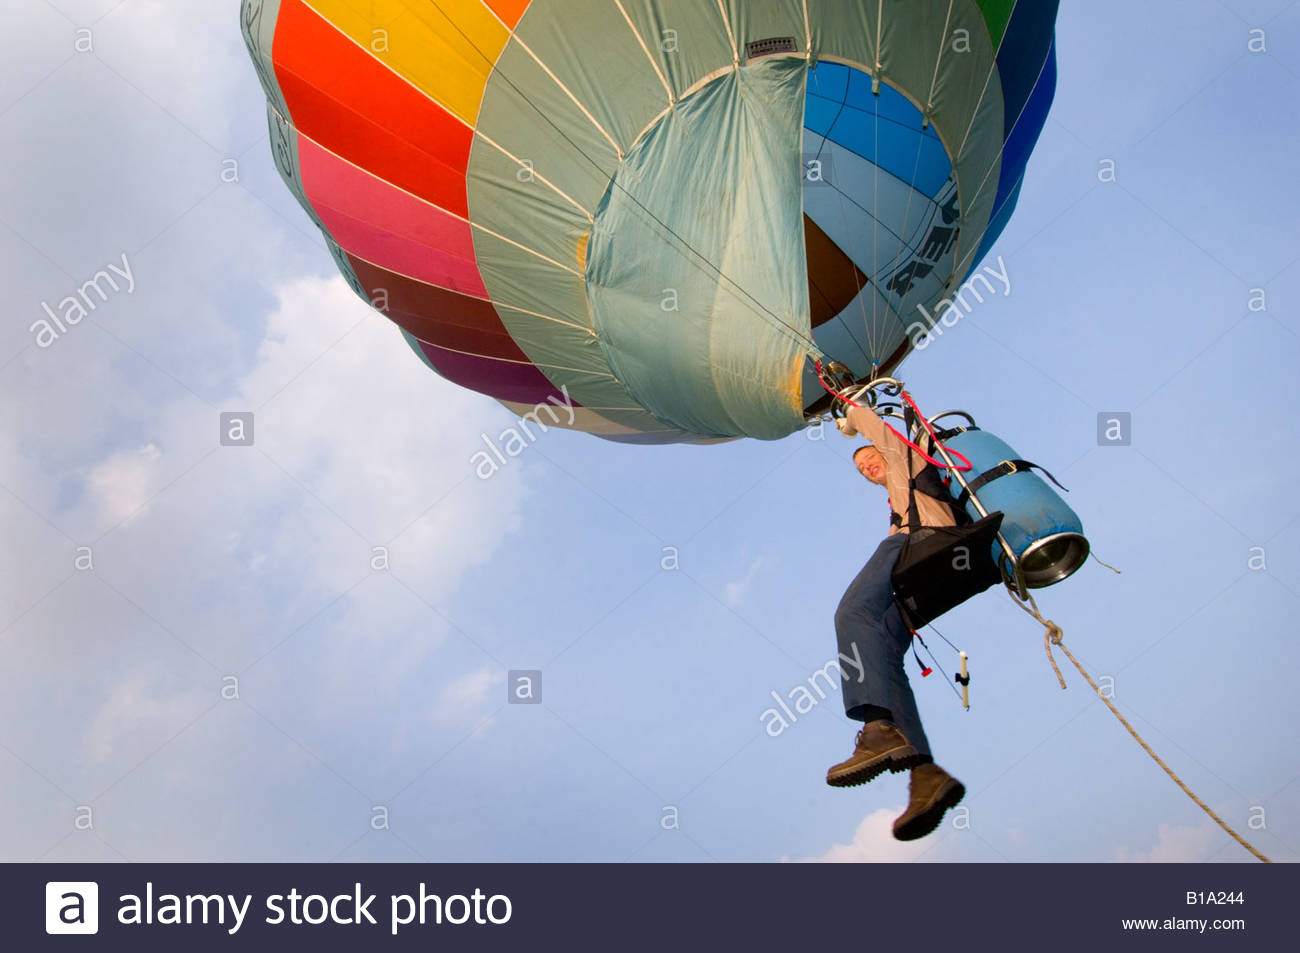 cloud-hopping-in-a-one-man-hot-air-balloon-bristol-uk-B1A244.jpg